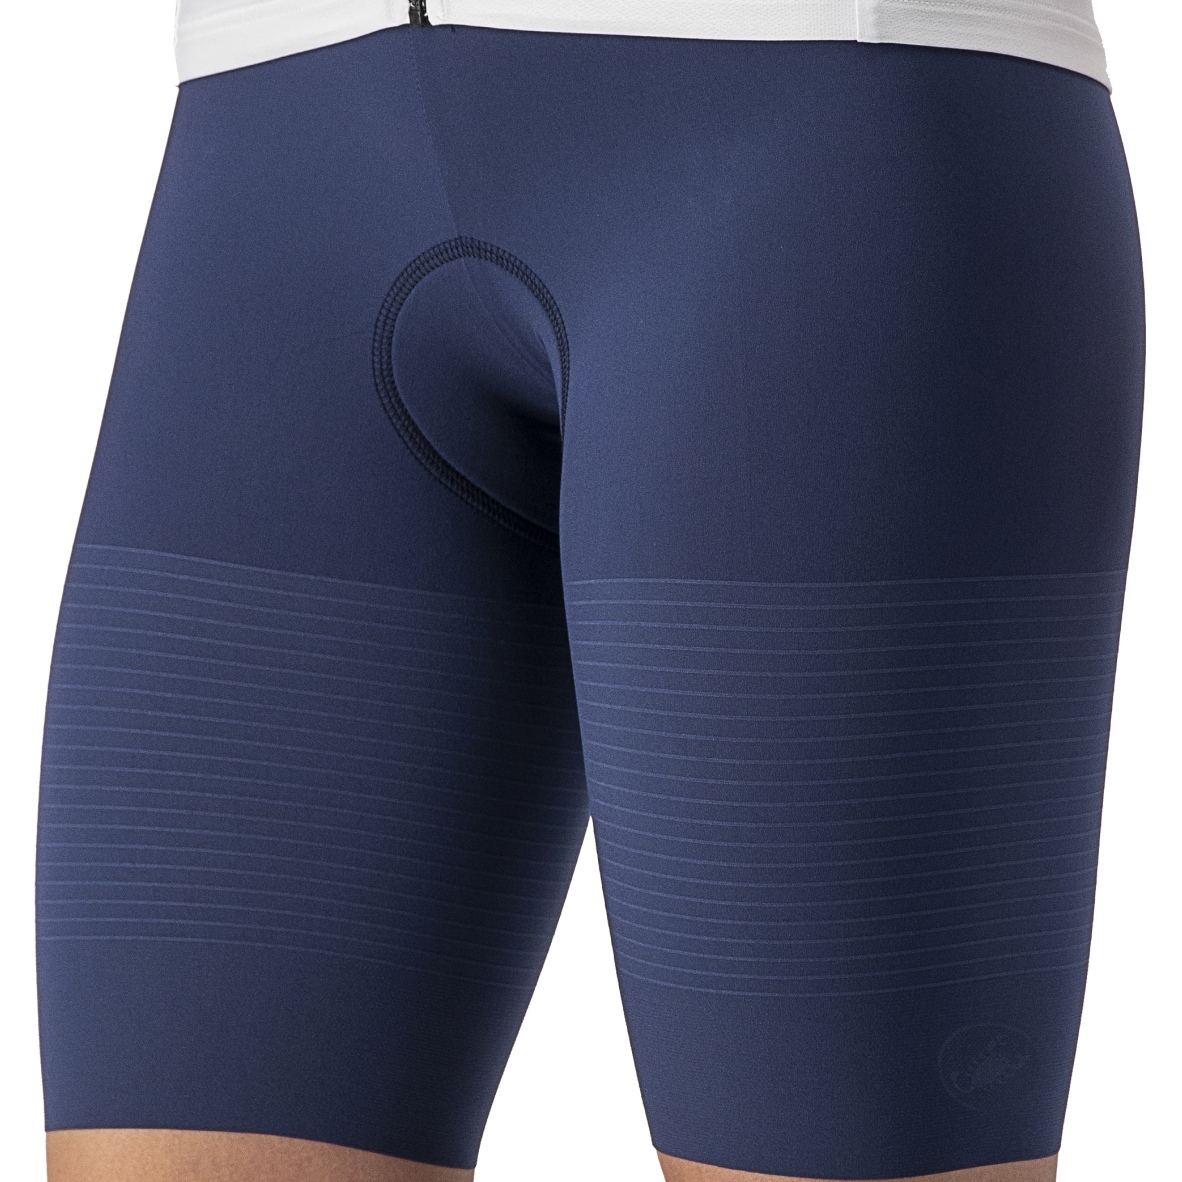 Produktbild von Castelli Premio Tri W Speed Shorts Damen - belgian blue 424